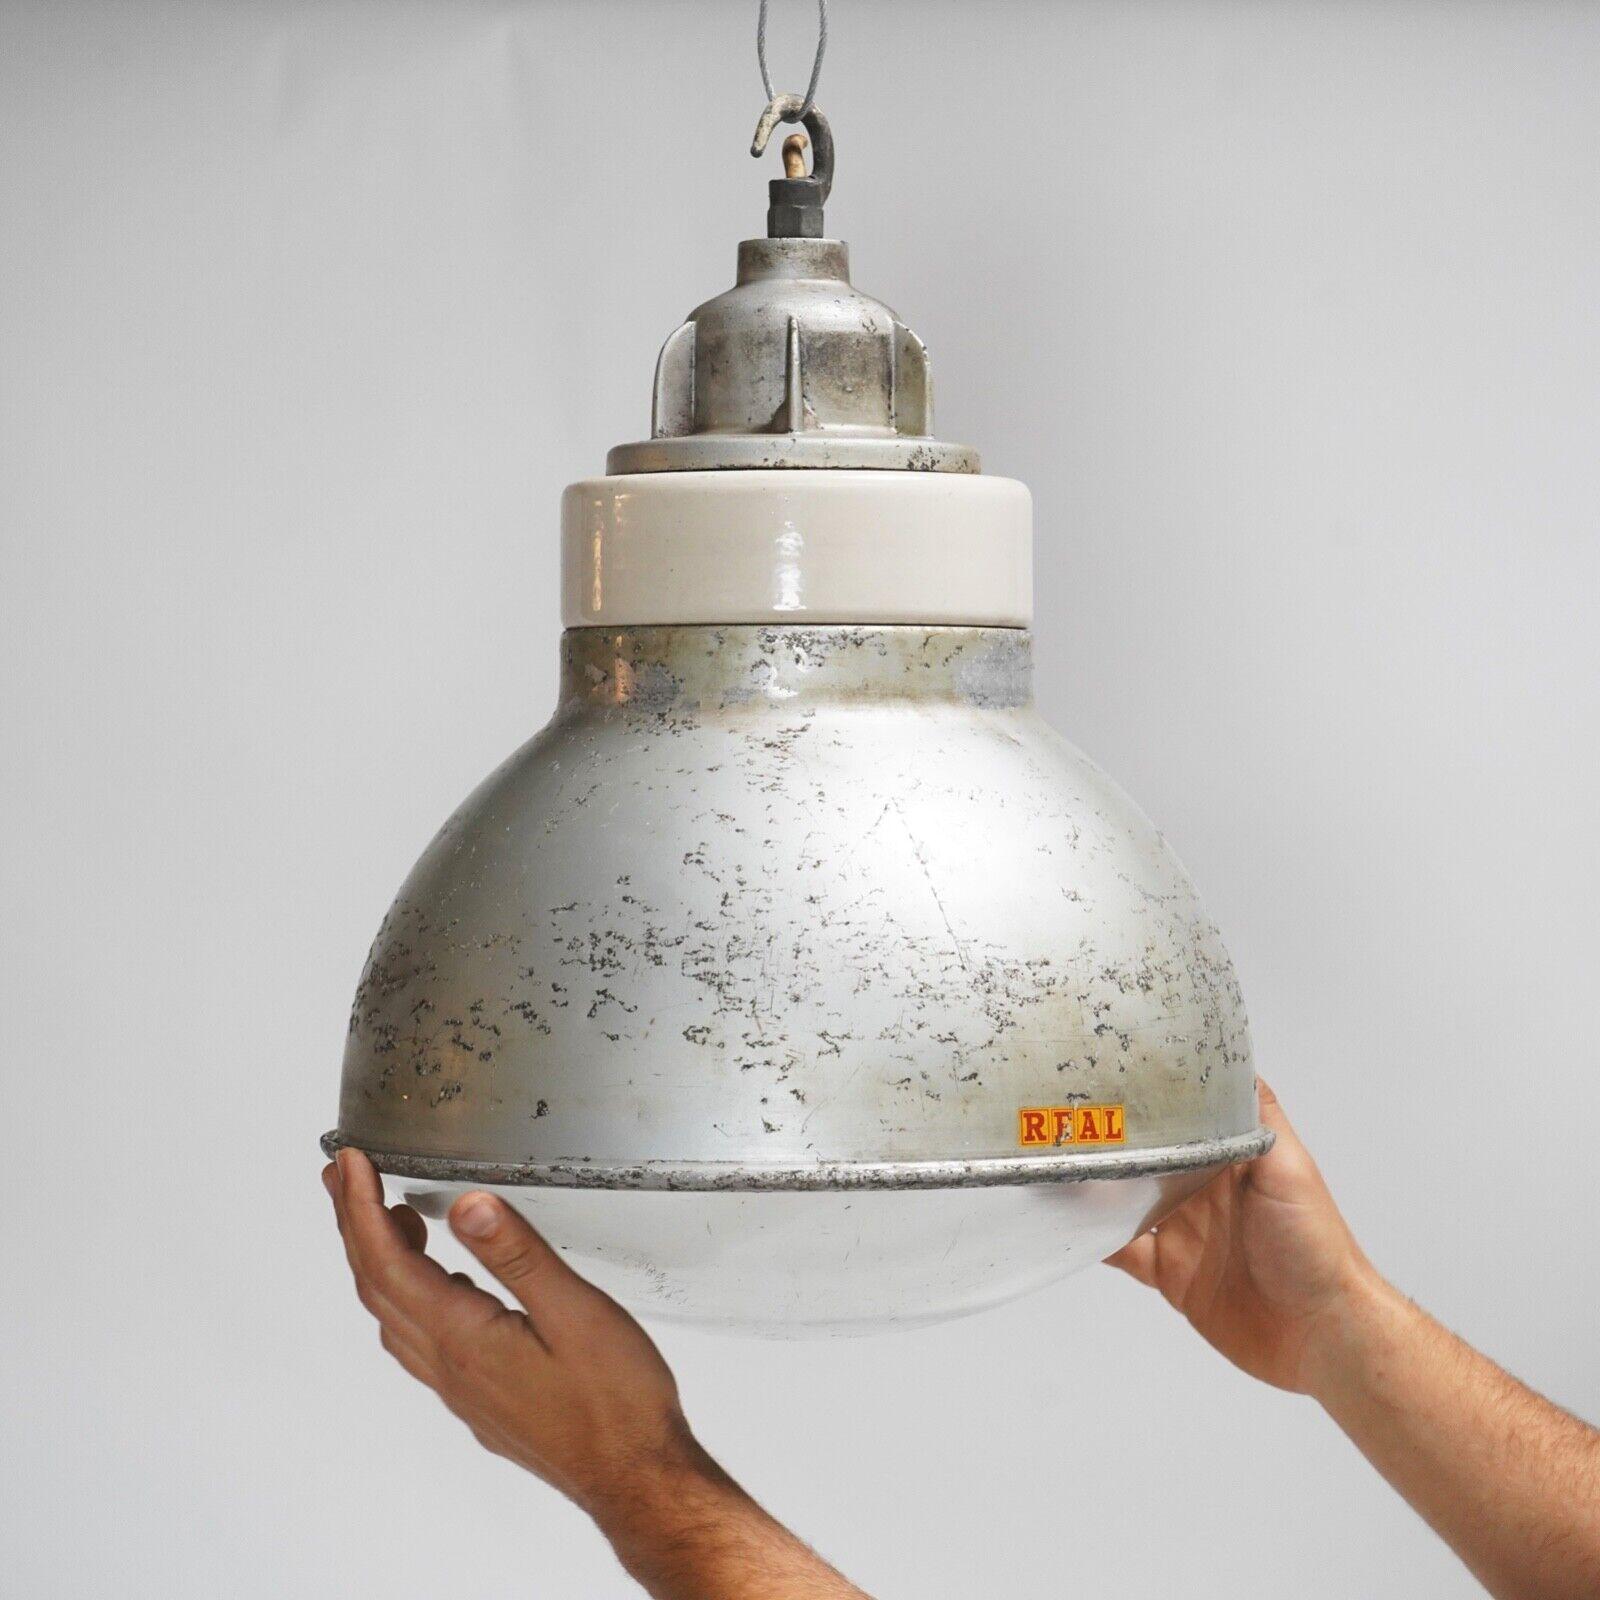 Il nous reste 1 lampe suspendue Reflector originale d'usine industrielle. Fabriquées par le fabricant britannique Simplex, elles sont dotées d'un boîtier de coupe en aluminium brossé et d'une galerie supérieure en porcelaine et aluminium. Ils